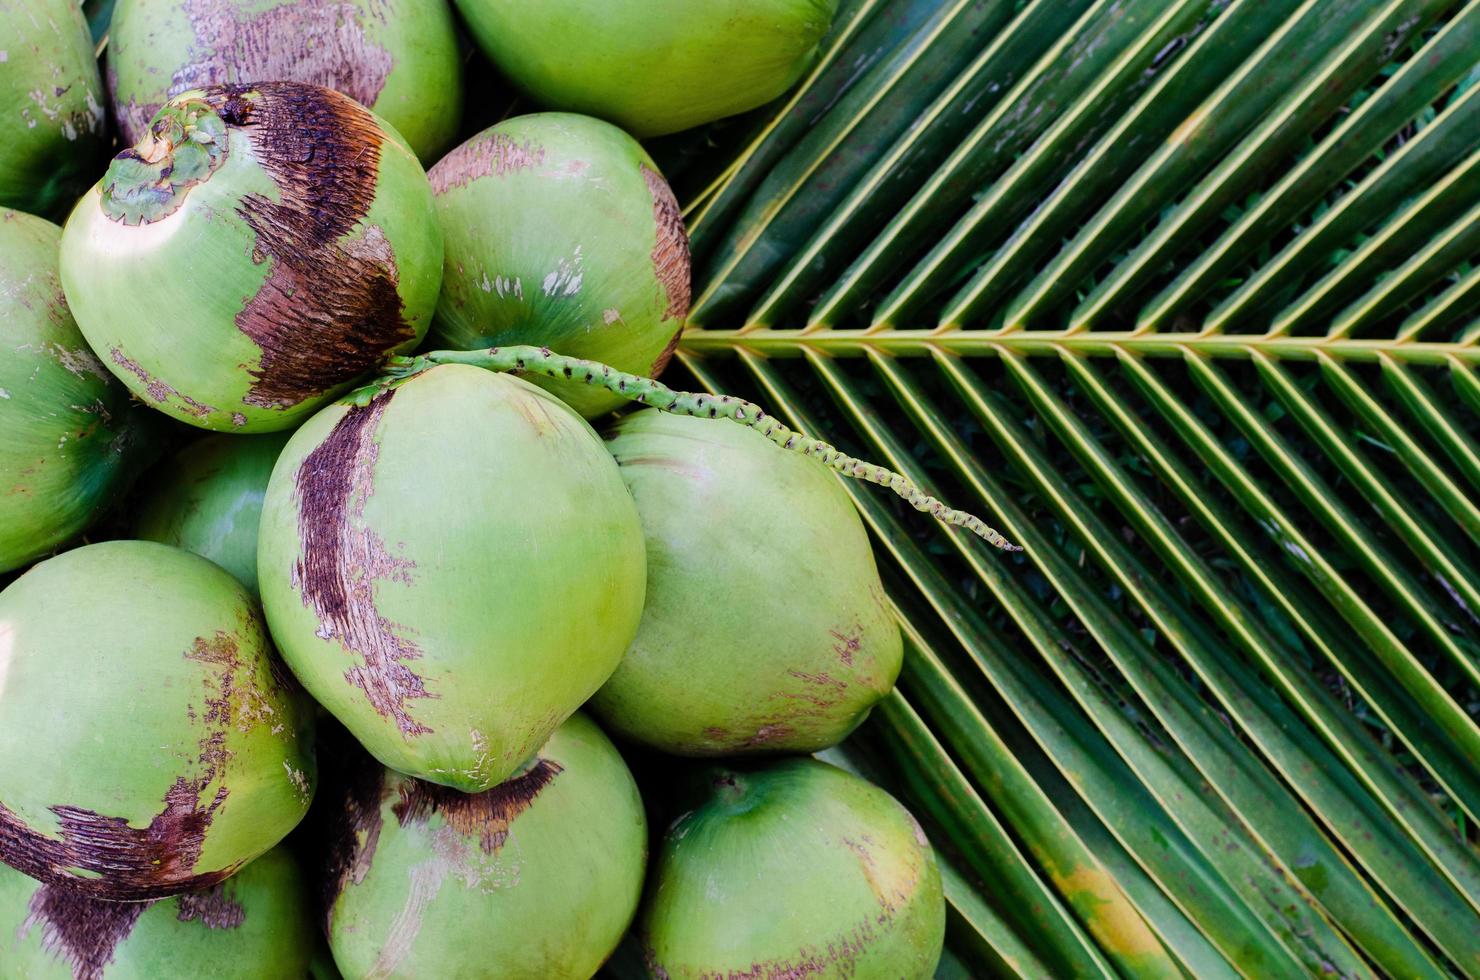 frutas de coco tailandesas dulces frescas jóvenes con carne blanca puestas en sus hojas verdes para el concepto de fruta de verano. foto